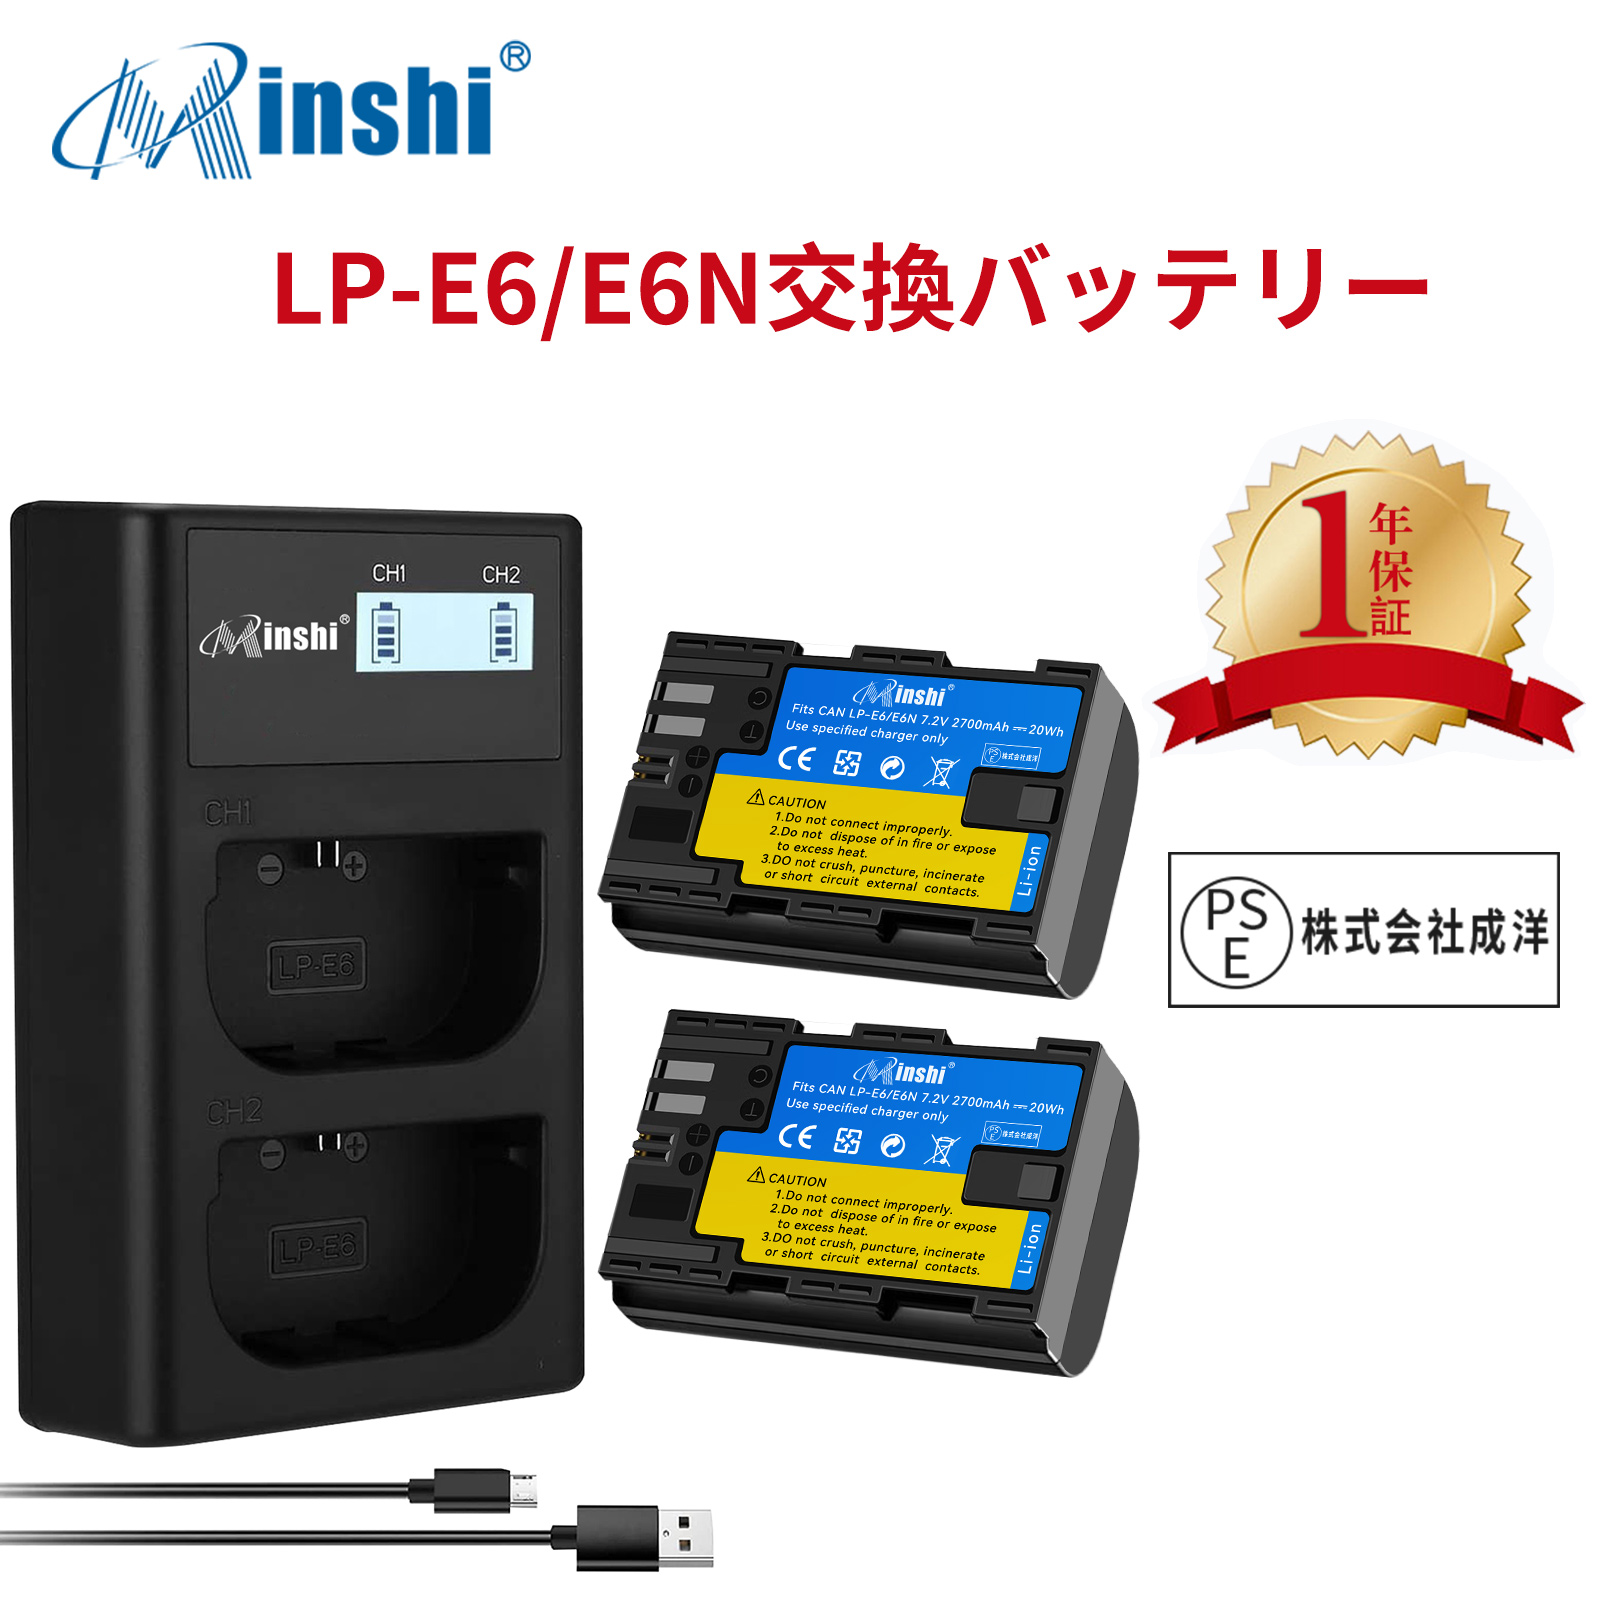 【２個セット】minshi Canon EOS 5DS R LP-E6 LP-E6N EOS6D CANON 80D 【2700mAh 7.2V】【互換急速USBチャージャー】 高品質LP-E6NH交換用バッテリー